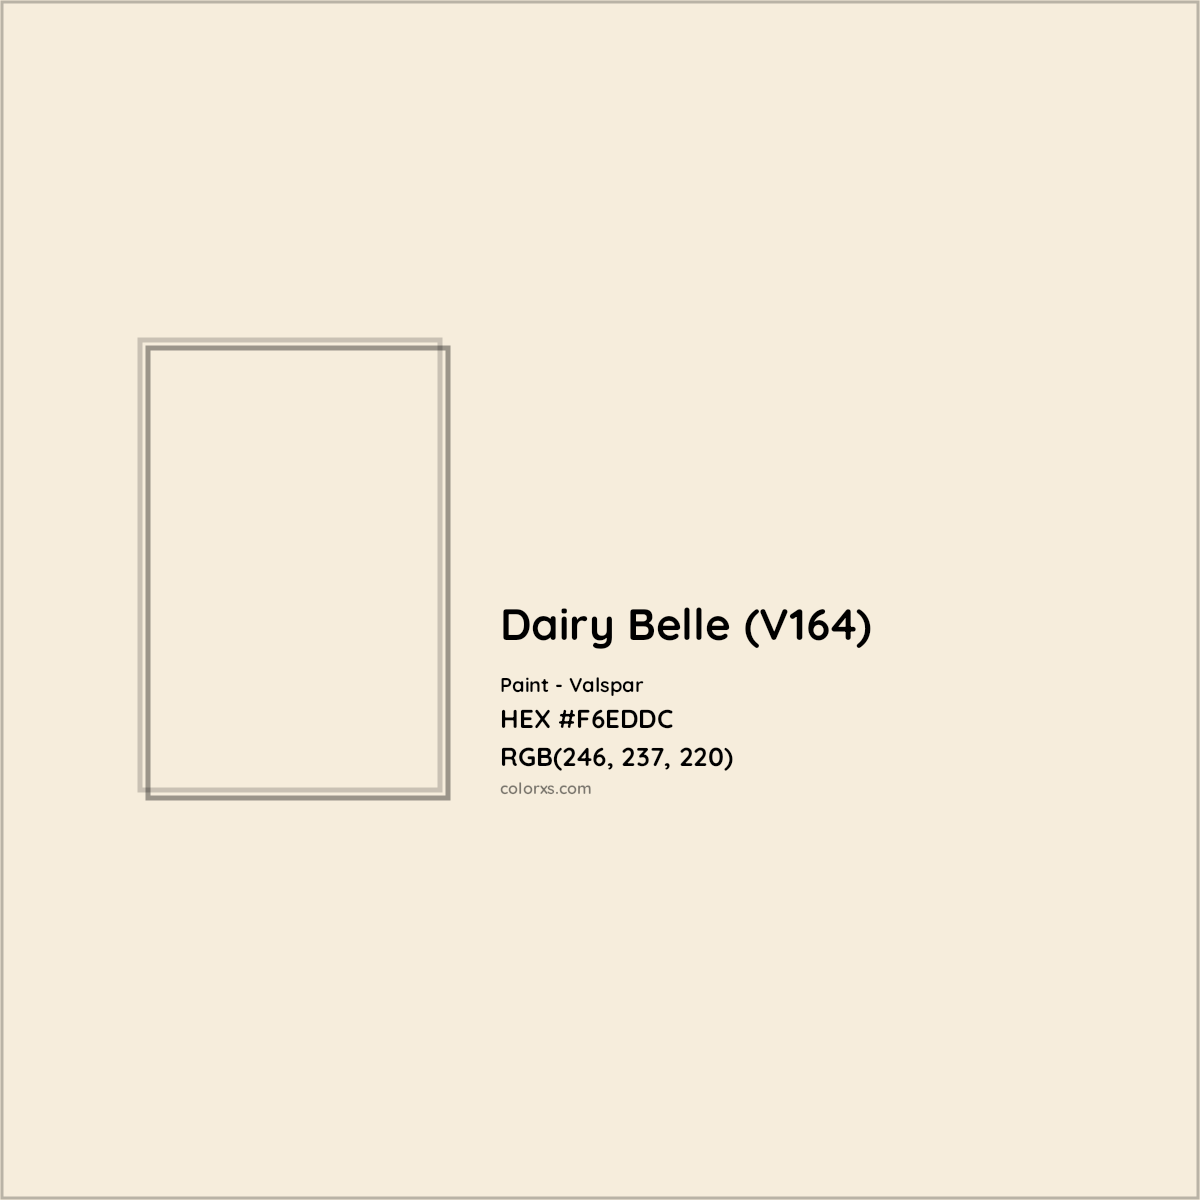 HEX #F6EDDC Dairy Belle (V164) Paint Valspar - Color Code